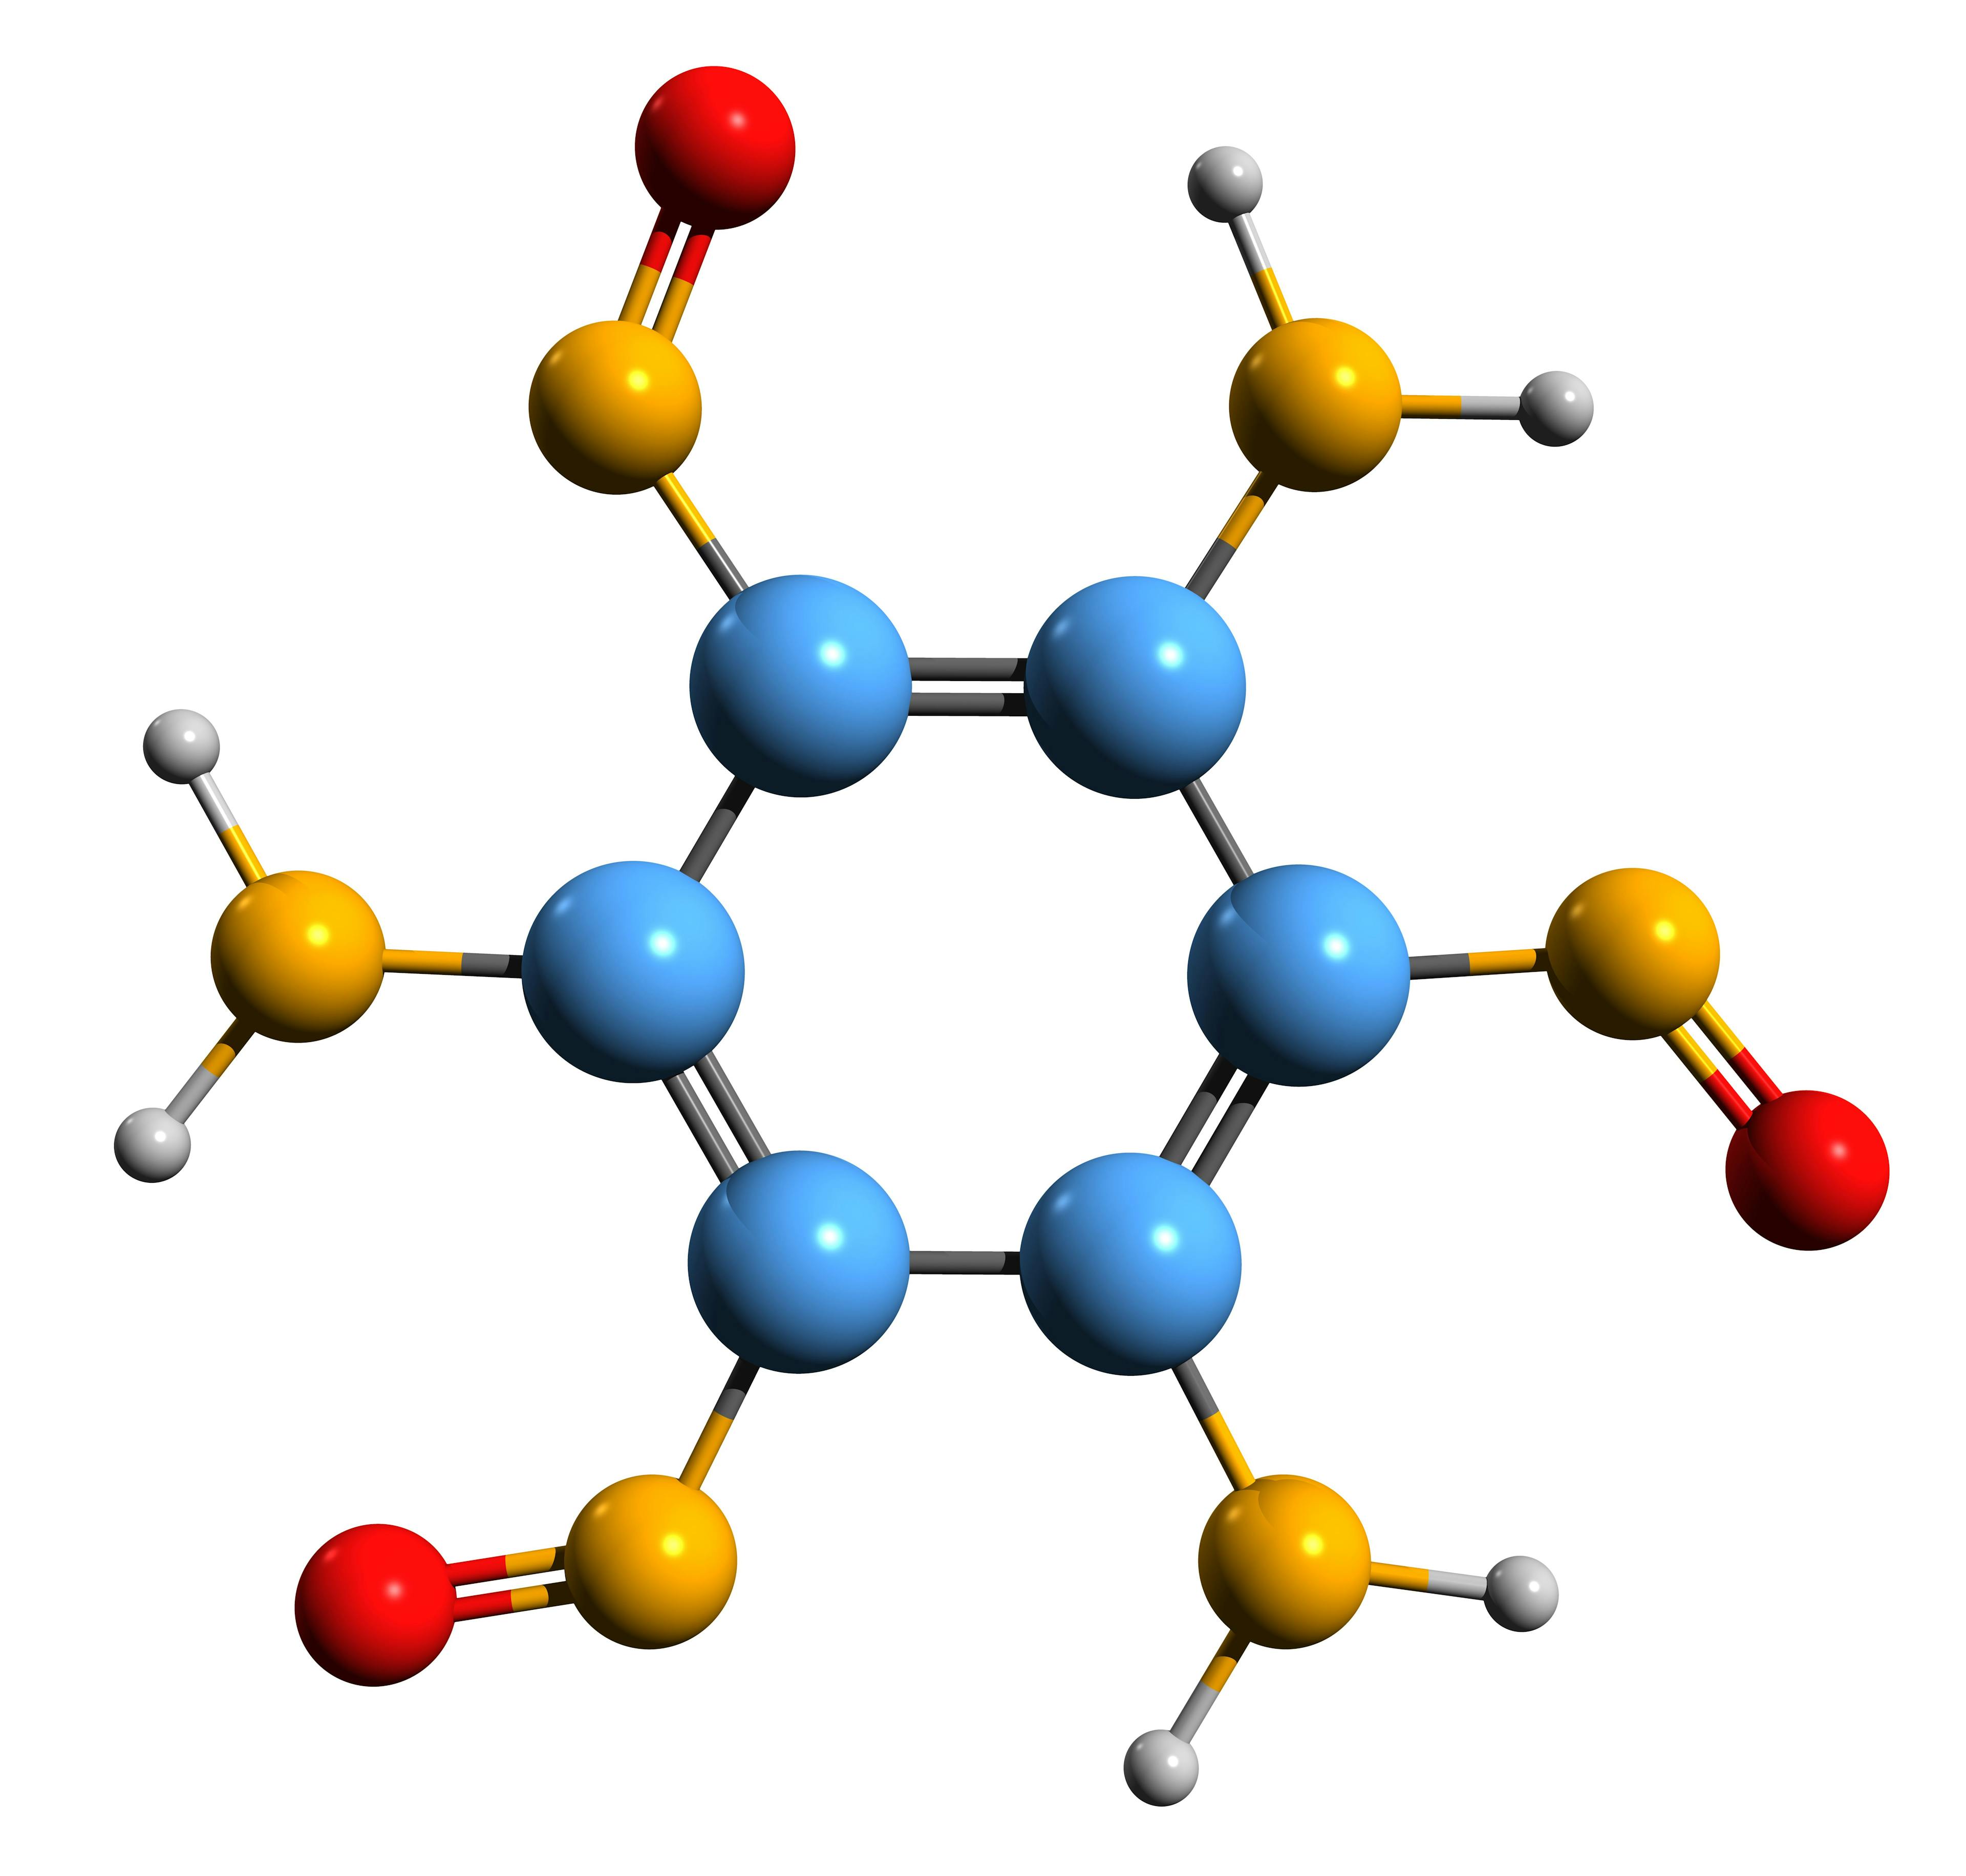 3D image of triaminotrinitrobenzene skeletal formula - molecular chemical structure of aromatic explosive TATB isolated on white background | Image Credit: © kseniyaomega - stock.adobe.com